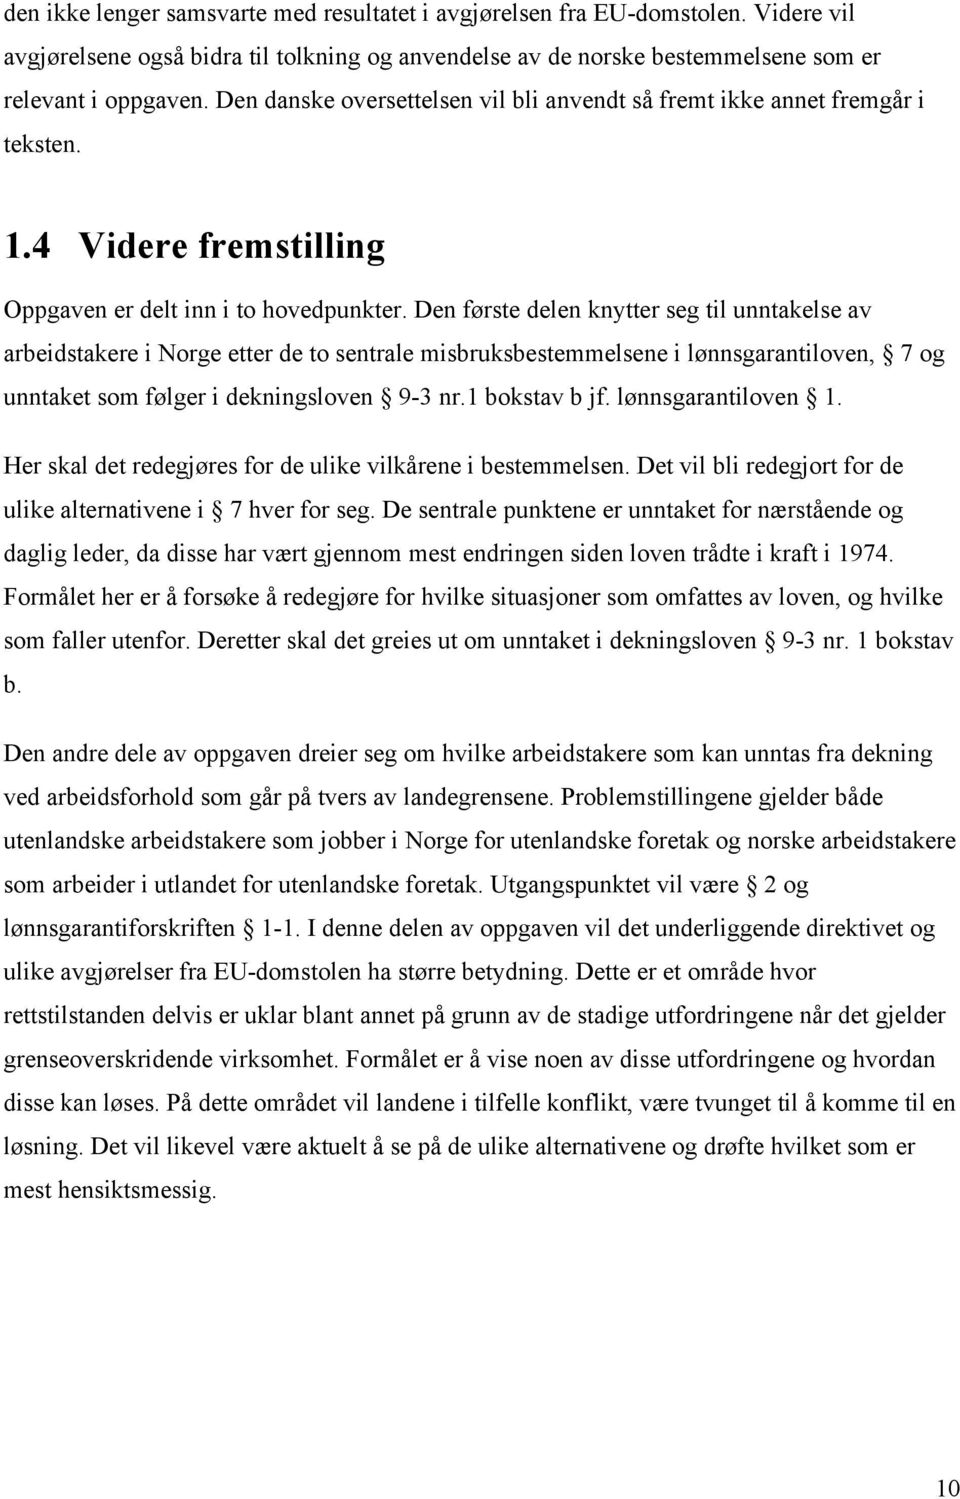 Den første delen knytter seg til unntakelse av arbeidstakere i Norge etter de to sentrale misbruksbestemmelsene i lønnsgarantiloven, 7 og unntaket som følger i dekningsloven 9-3 nr.1 bokstav b jf.